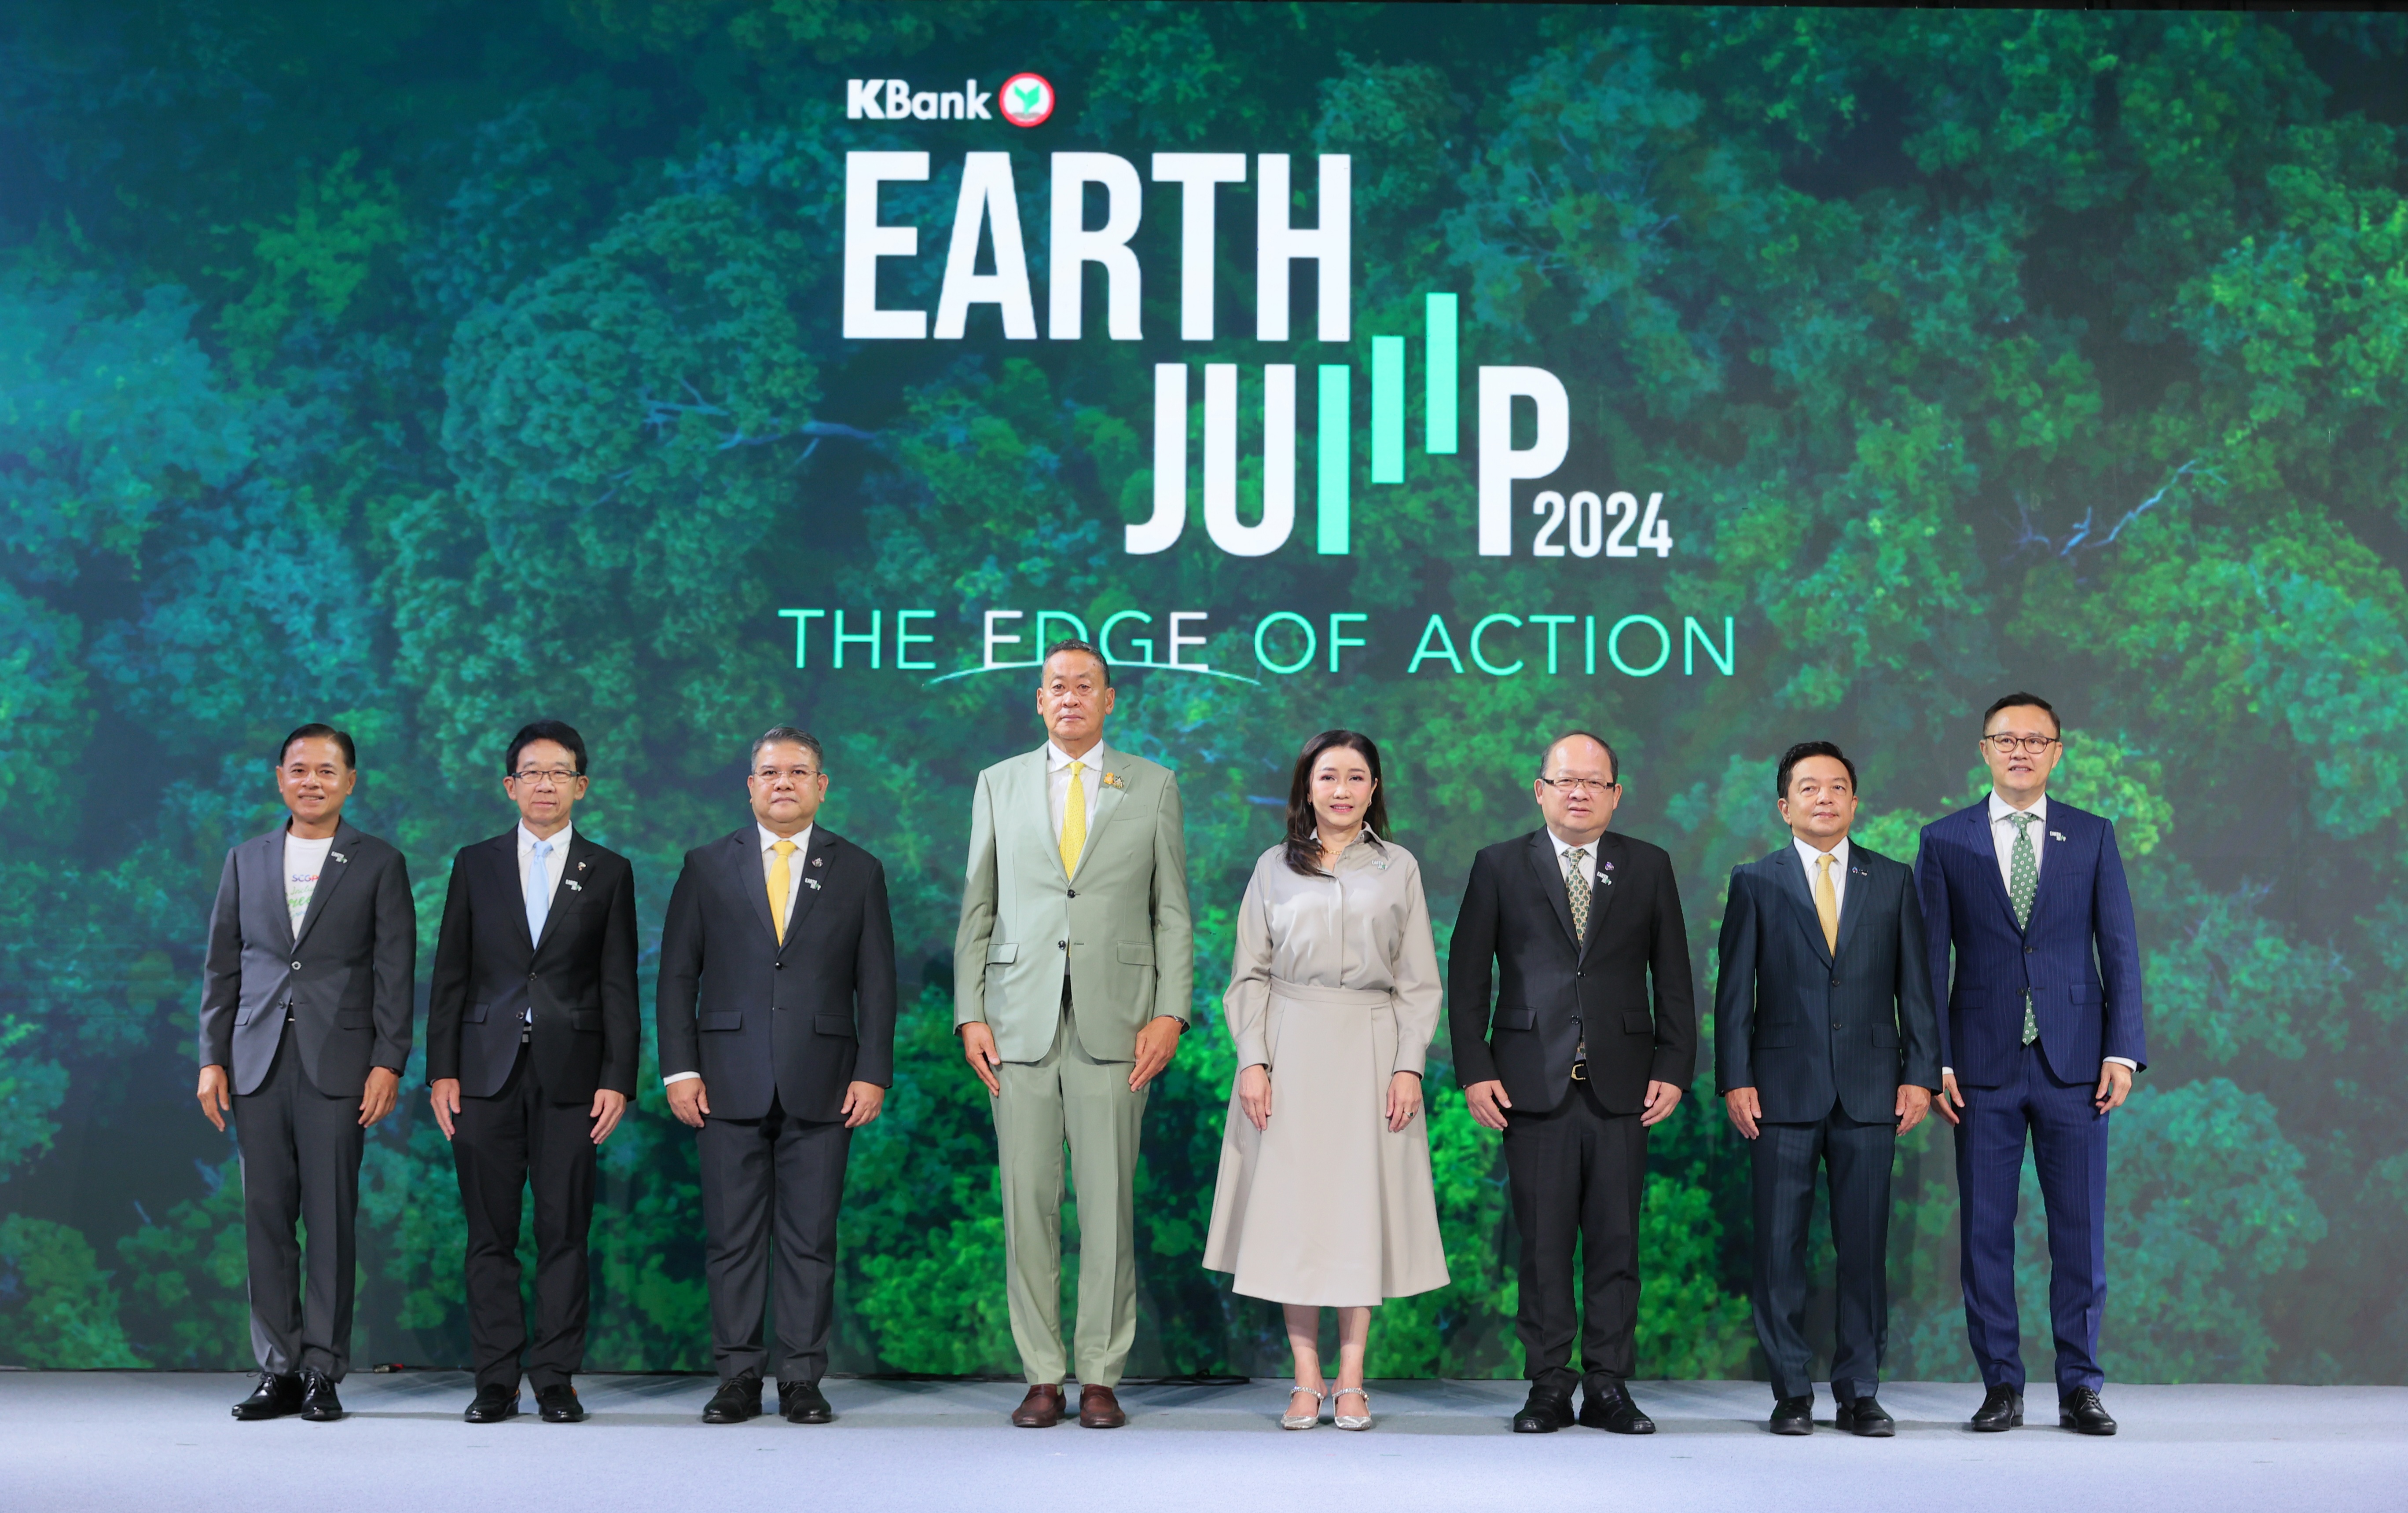 กสิกรไทยจัดฟอรัมใหญ่ EARTH JUMP 2024 รวมวิทยากรระดับโลกและไทย ร่วมยกระดับธุรกิจไทยสู่เศรษฐกิจคาร์บอนต่ำ